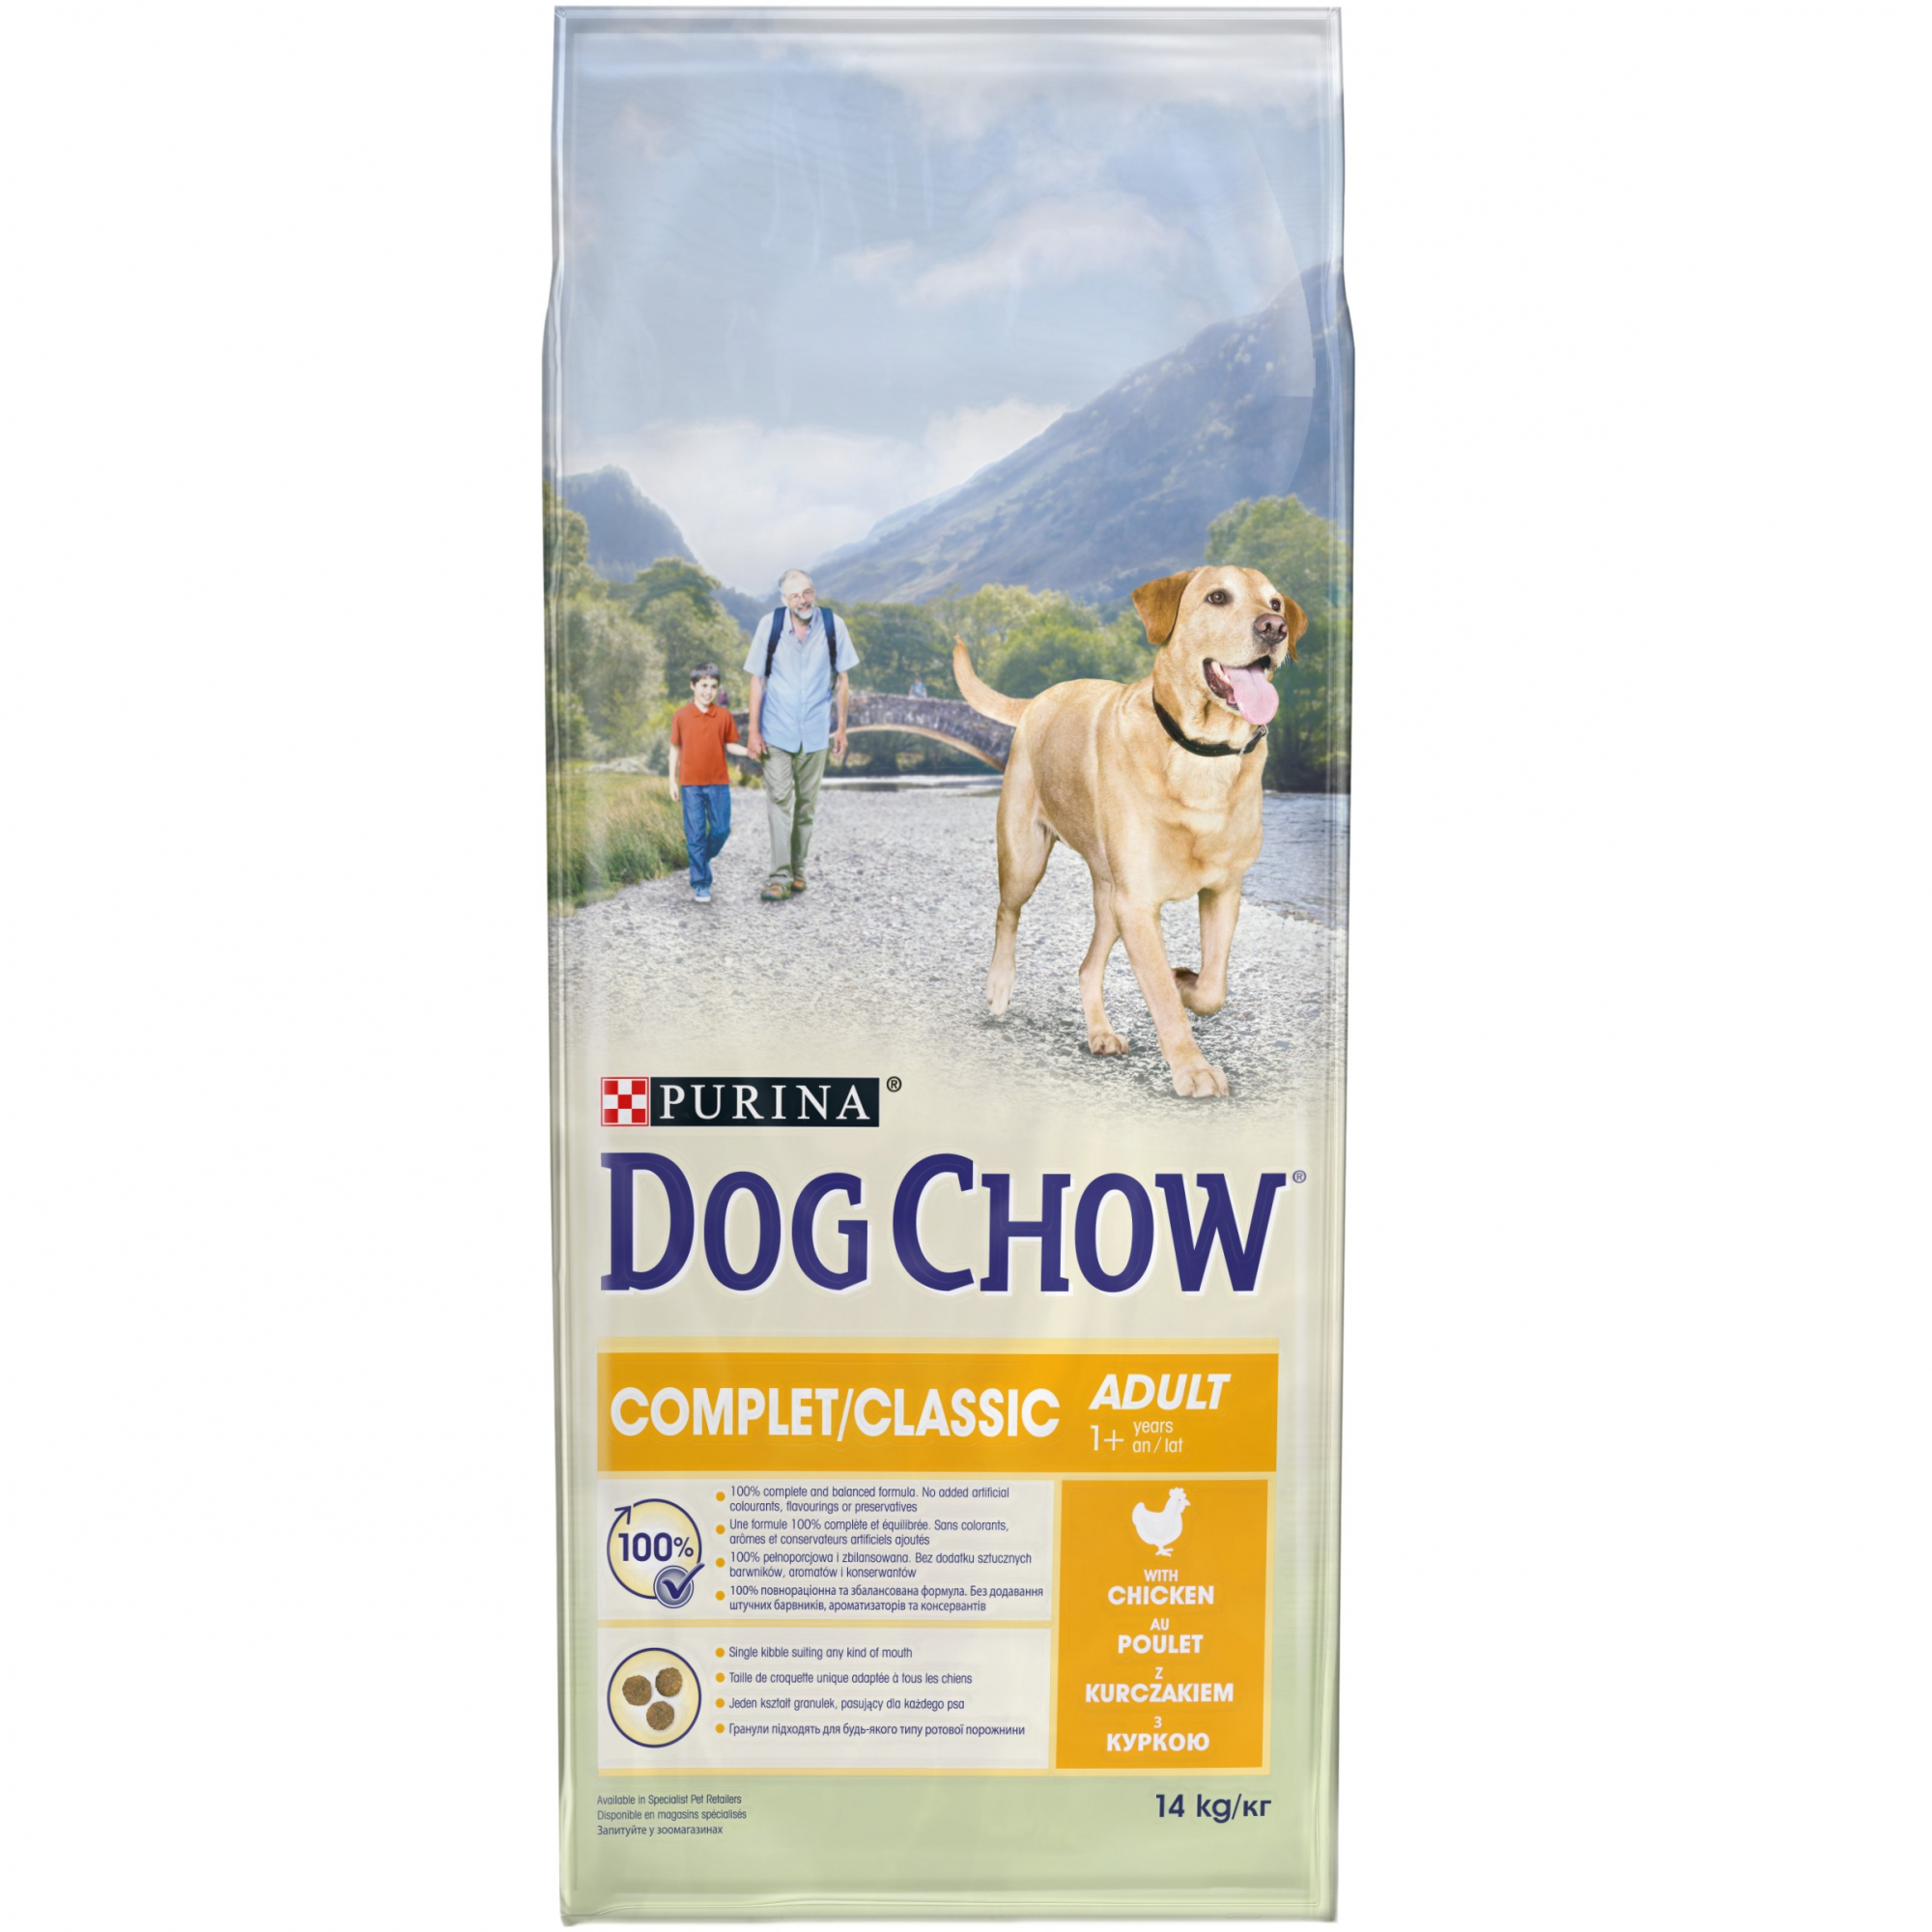 DOG CHOW Complet con Pollo para perros